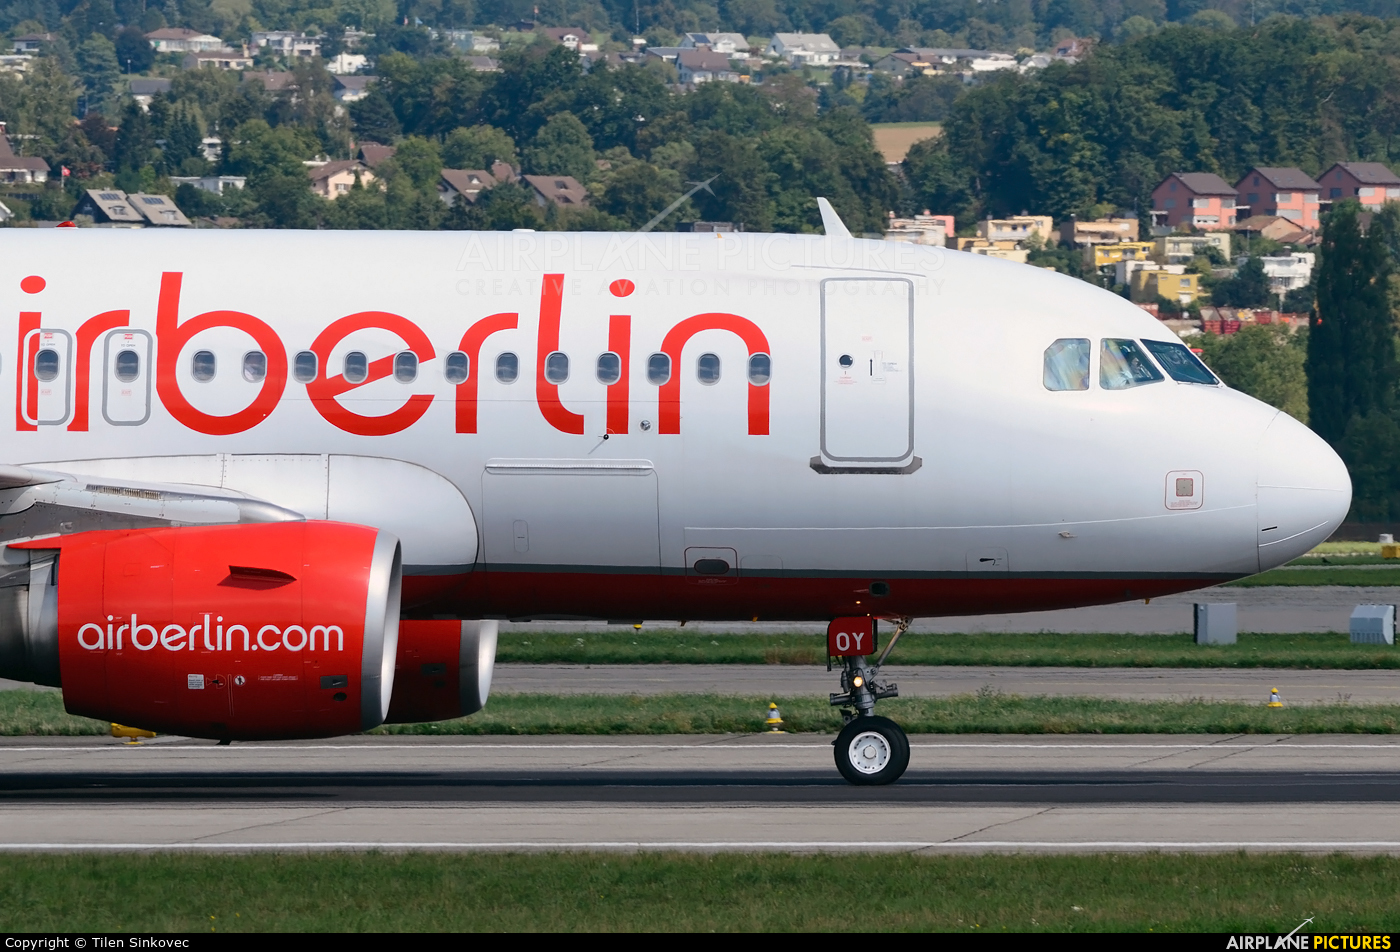 Air Berlin - Belair HB-JOY aircraft at Zurich